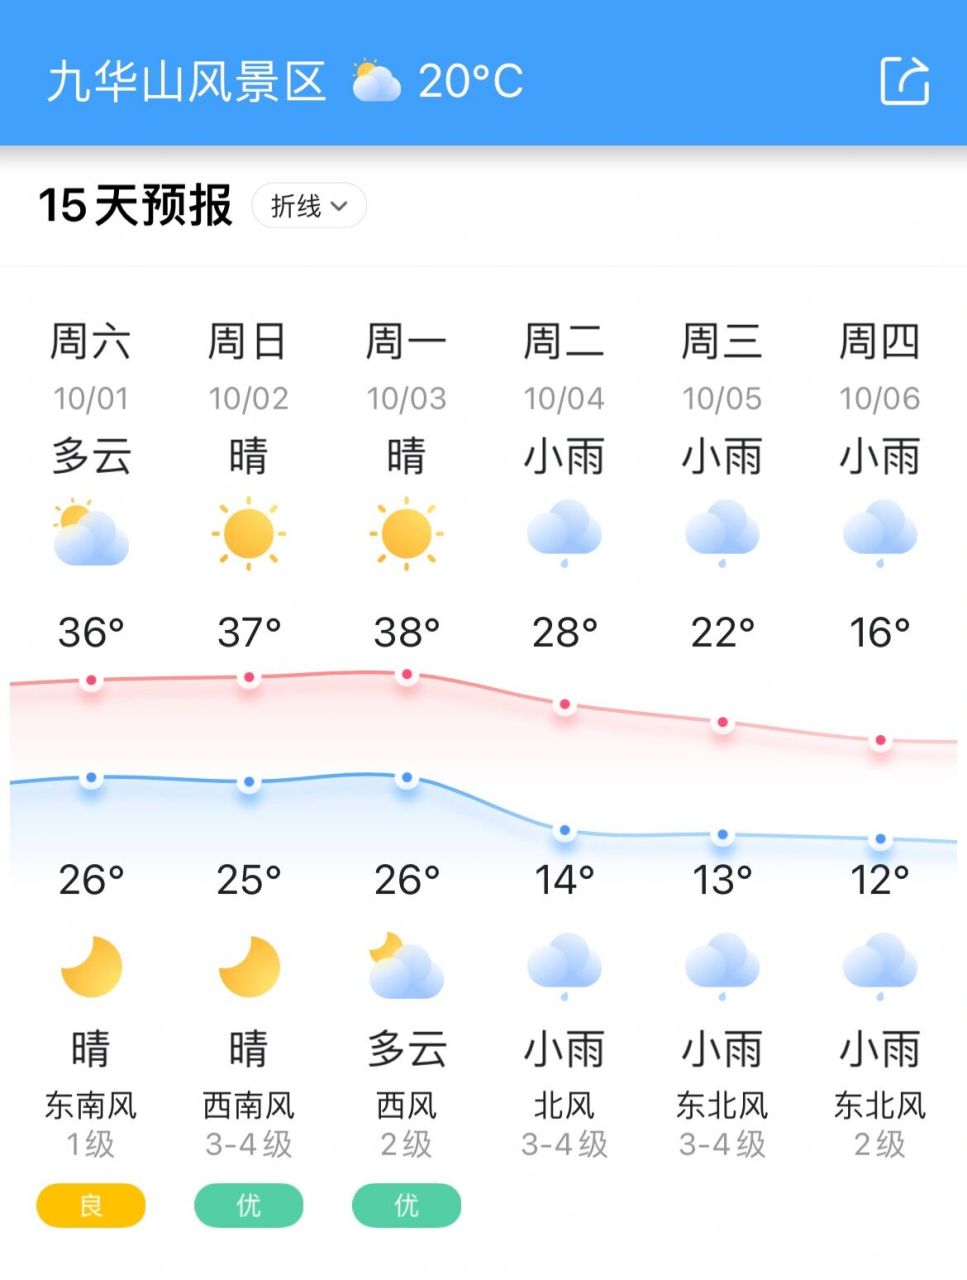 国庆节期间九华山天气预告 仅供参考,一切以实地游玩为准